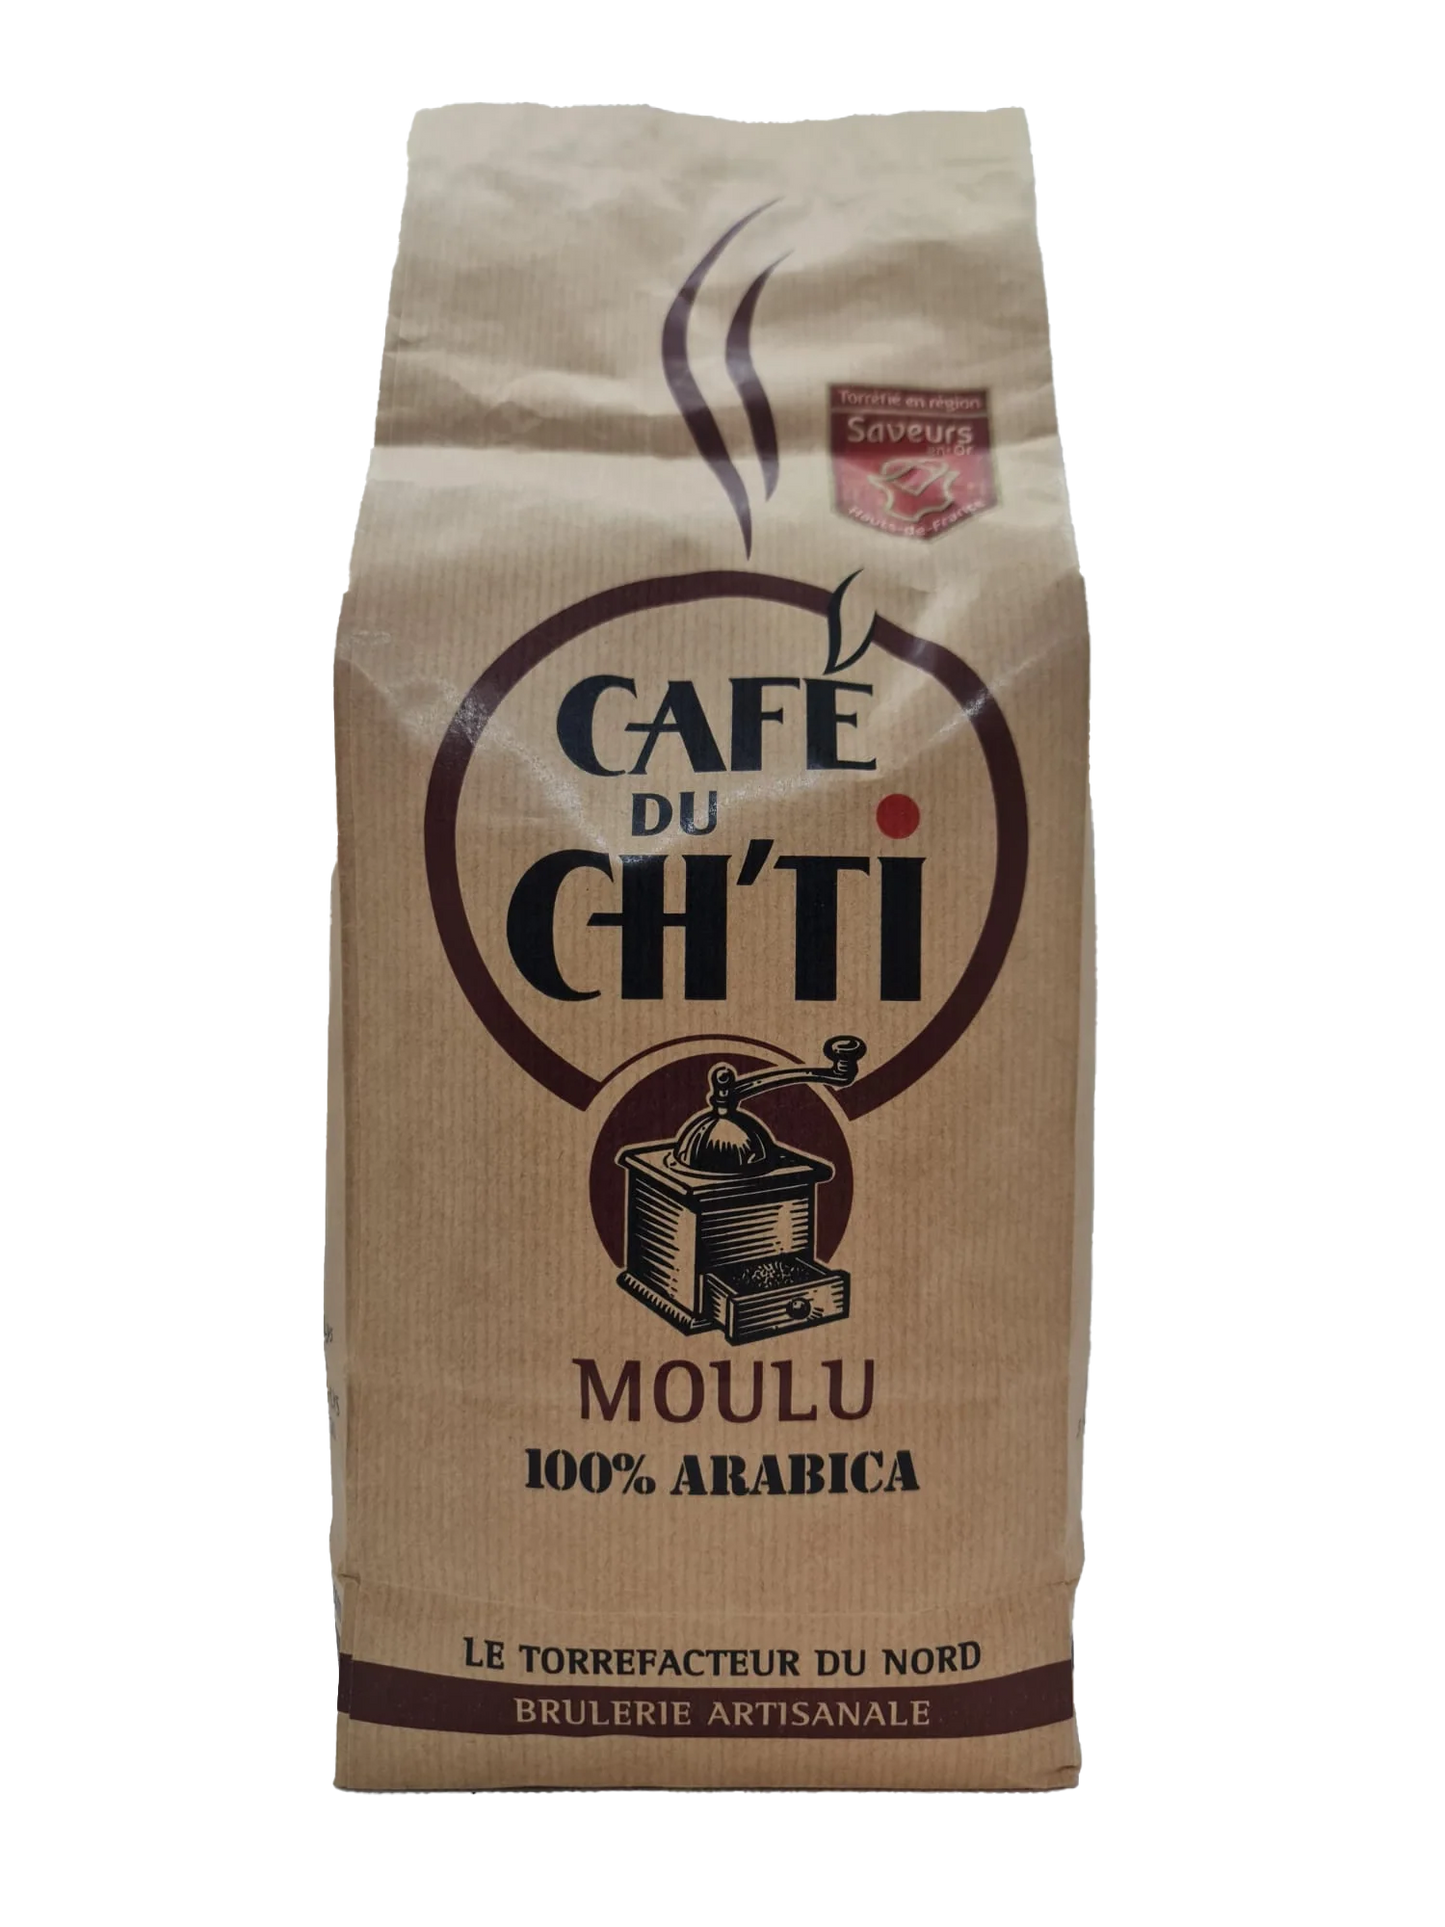 Café du Ch'ti moulu